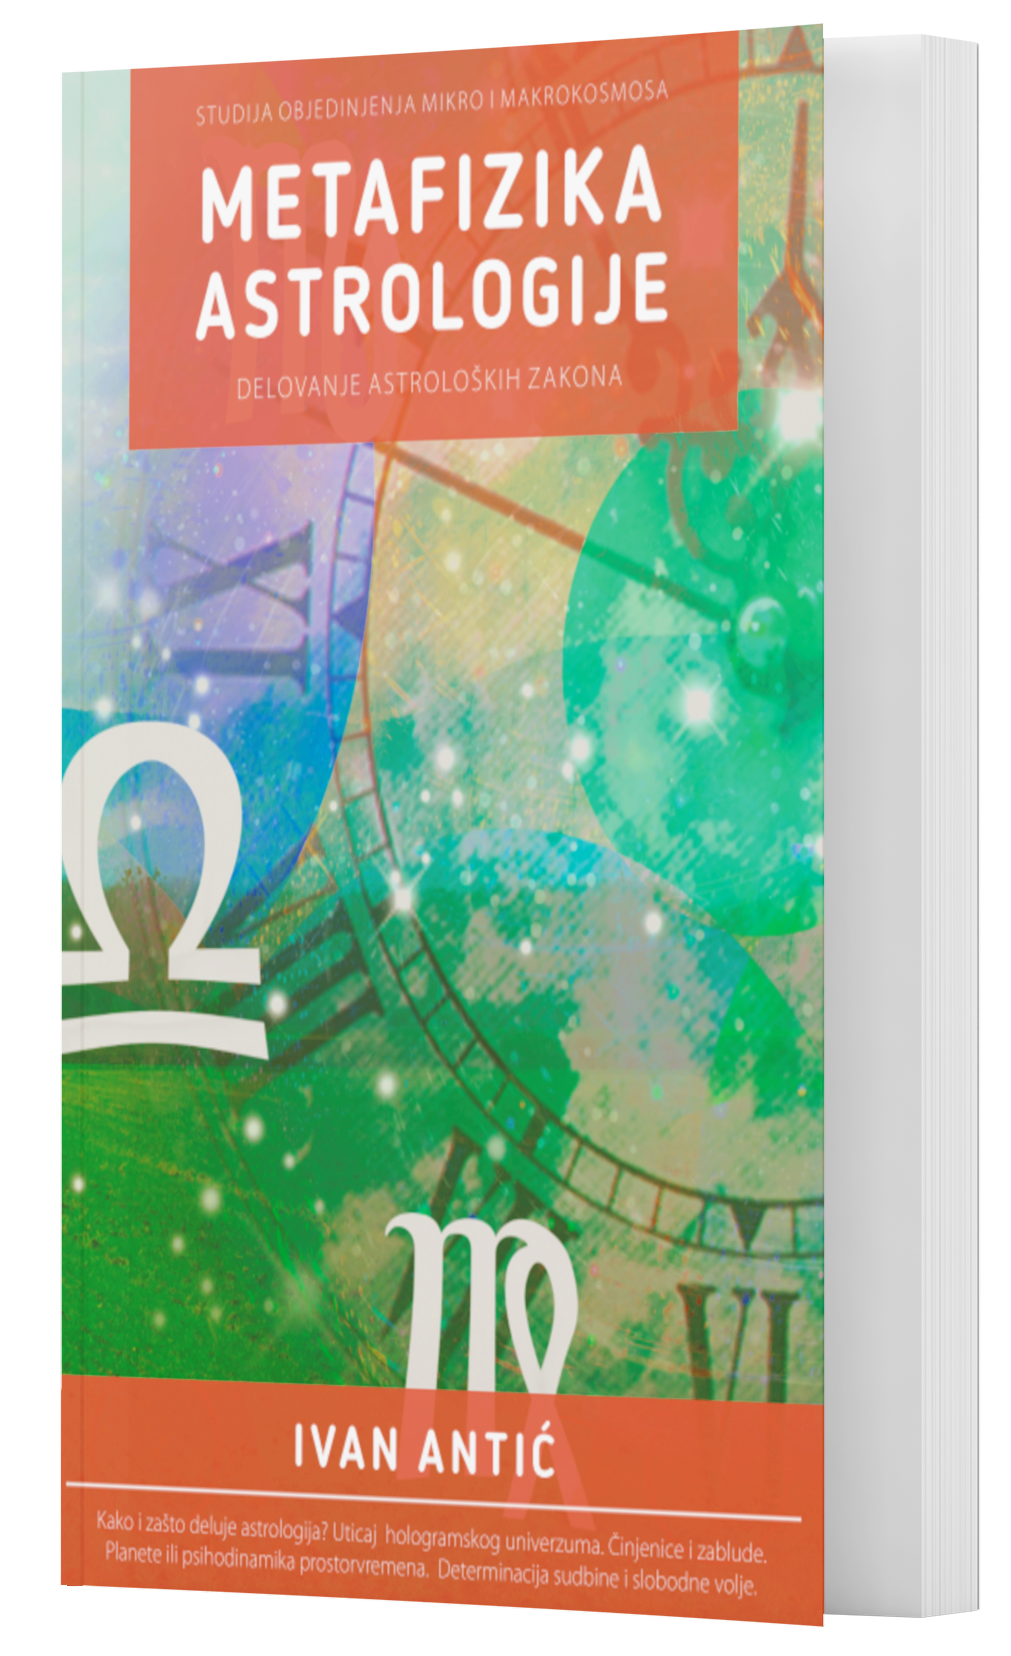 1611675010Metafizika astrologije - Ivan Antic.png